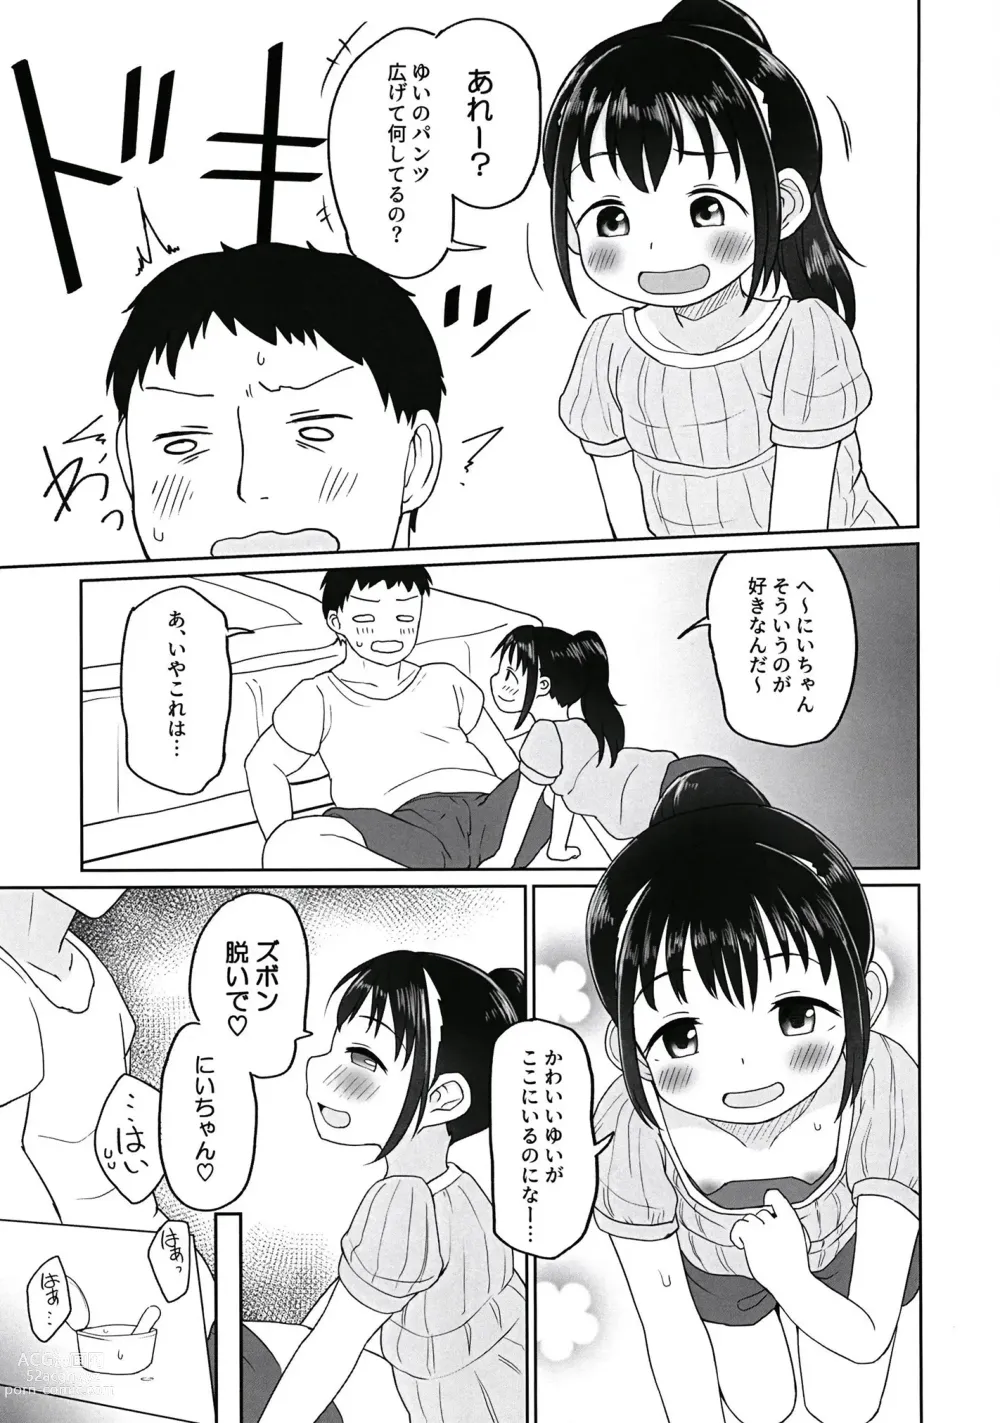 Page 6 of doujinshi Yui-chan to Mizugi Ecchi